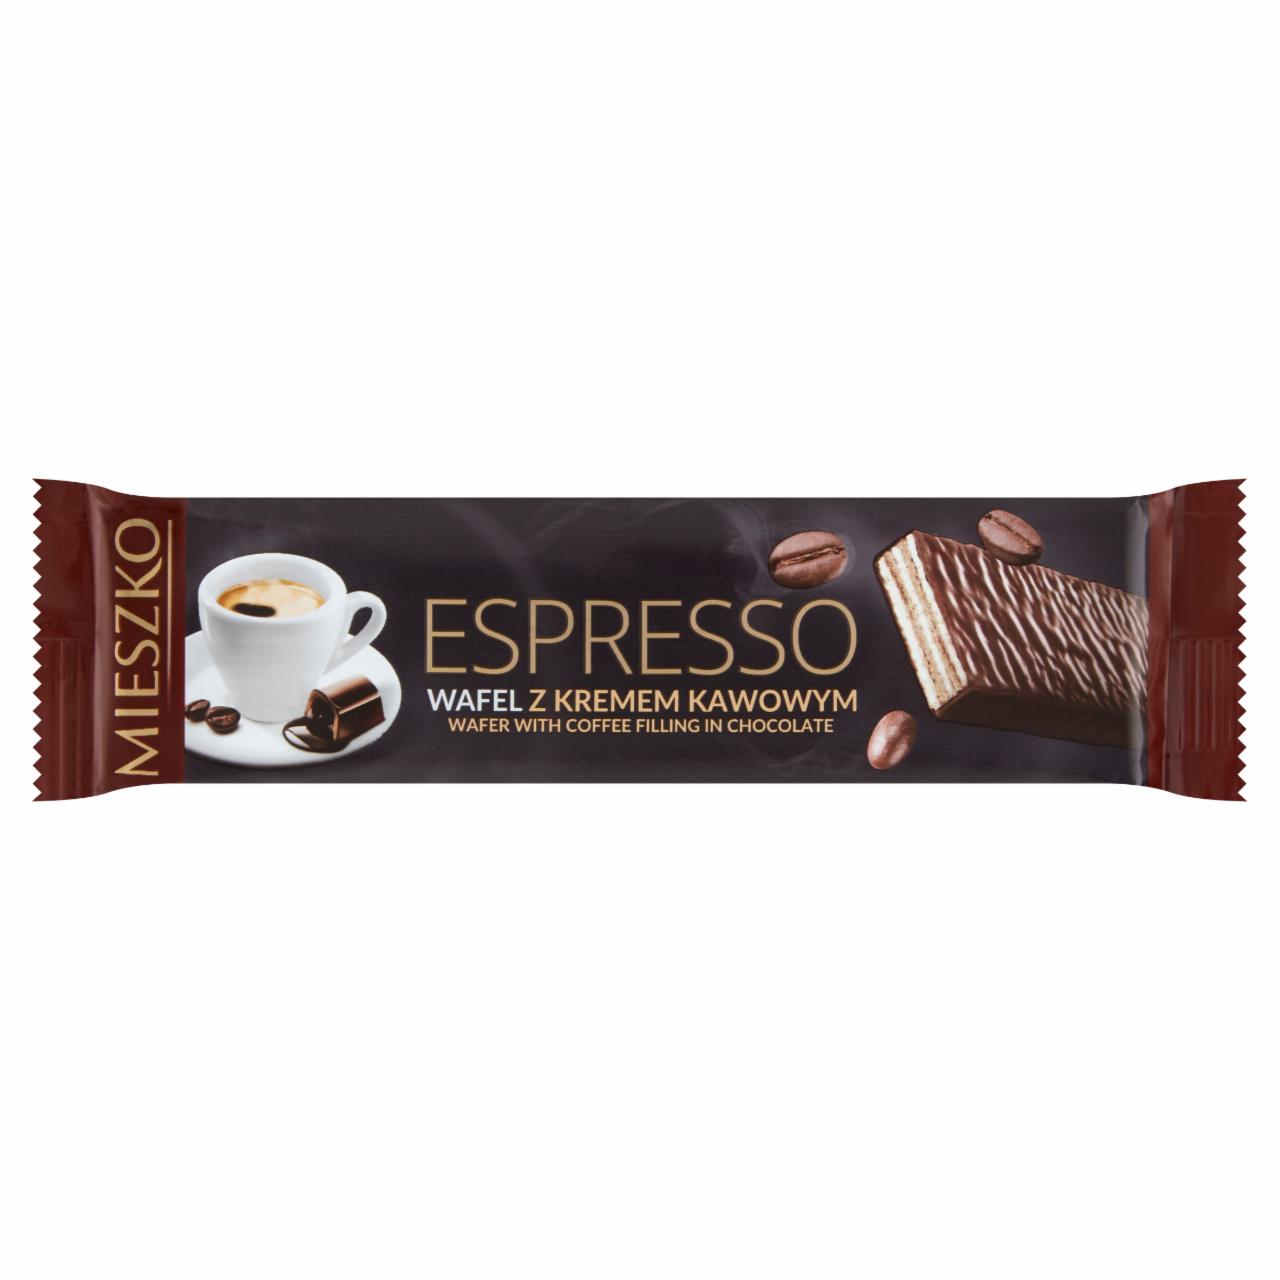 Zdjęcia - Mieszko Espresso Wafel z kremem kawowym 34 g